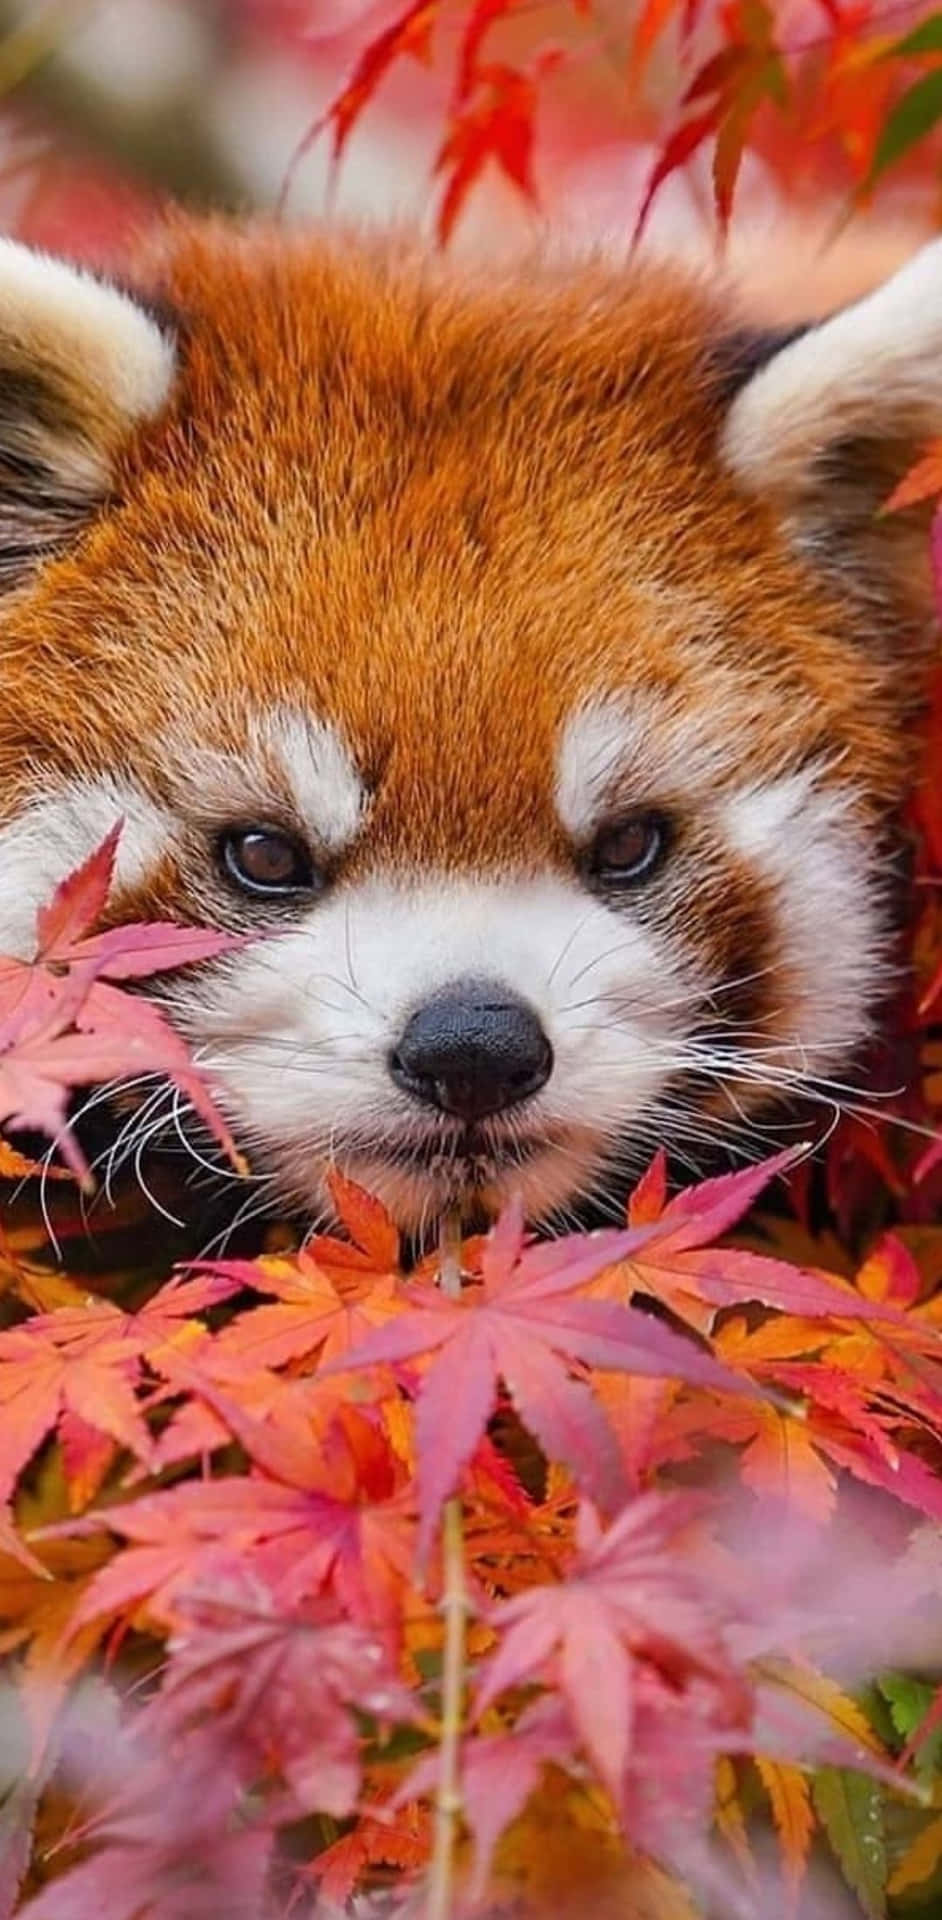 Cute Red Panda Wallpaper